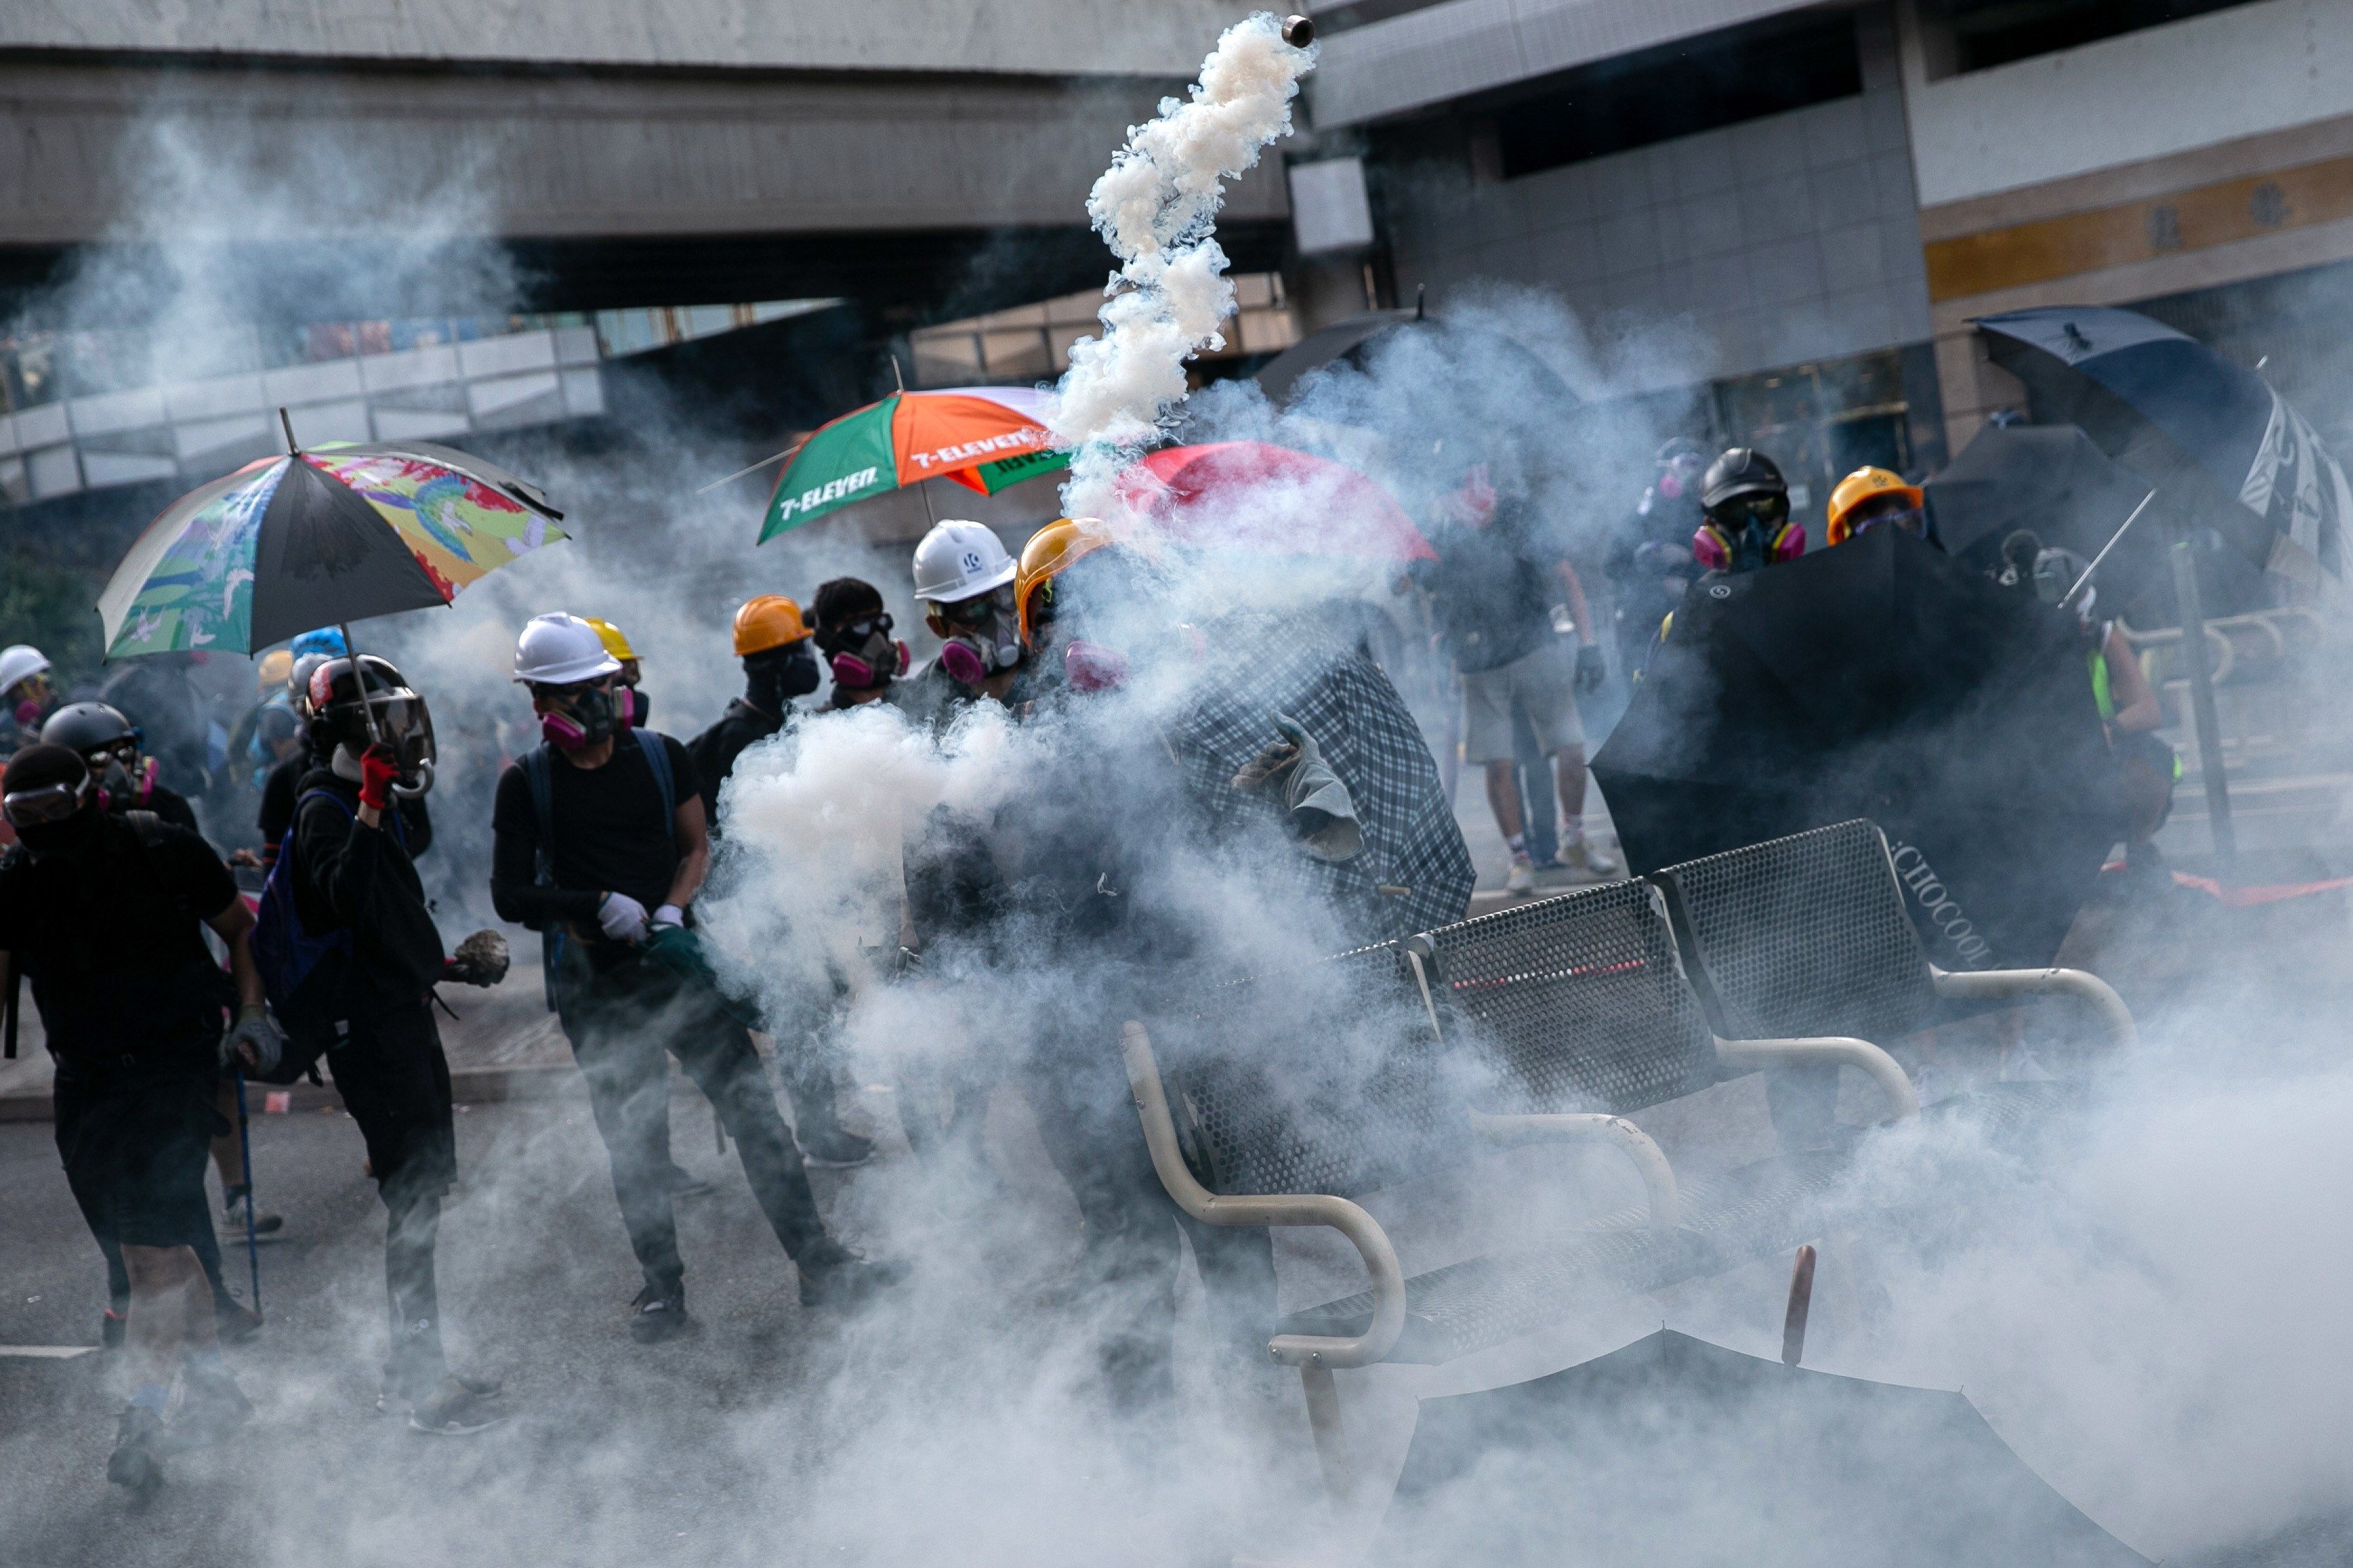 La Unión Europea insiste en pedir contención en Hong Kong tras registrarse herido de bala. (Foto Prensa Libre: EFE)